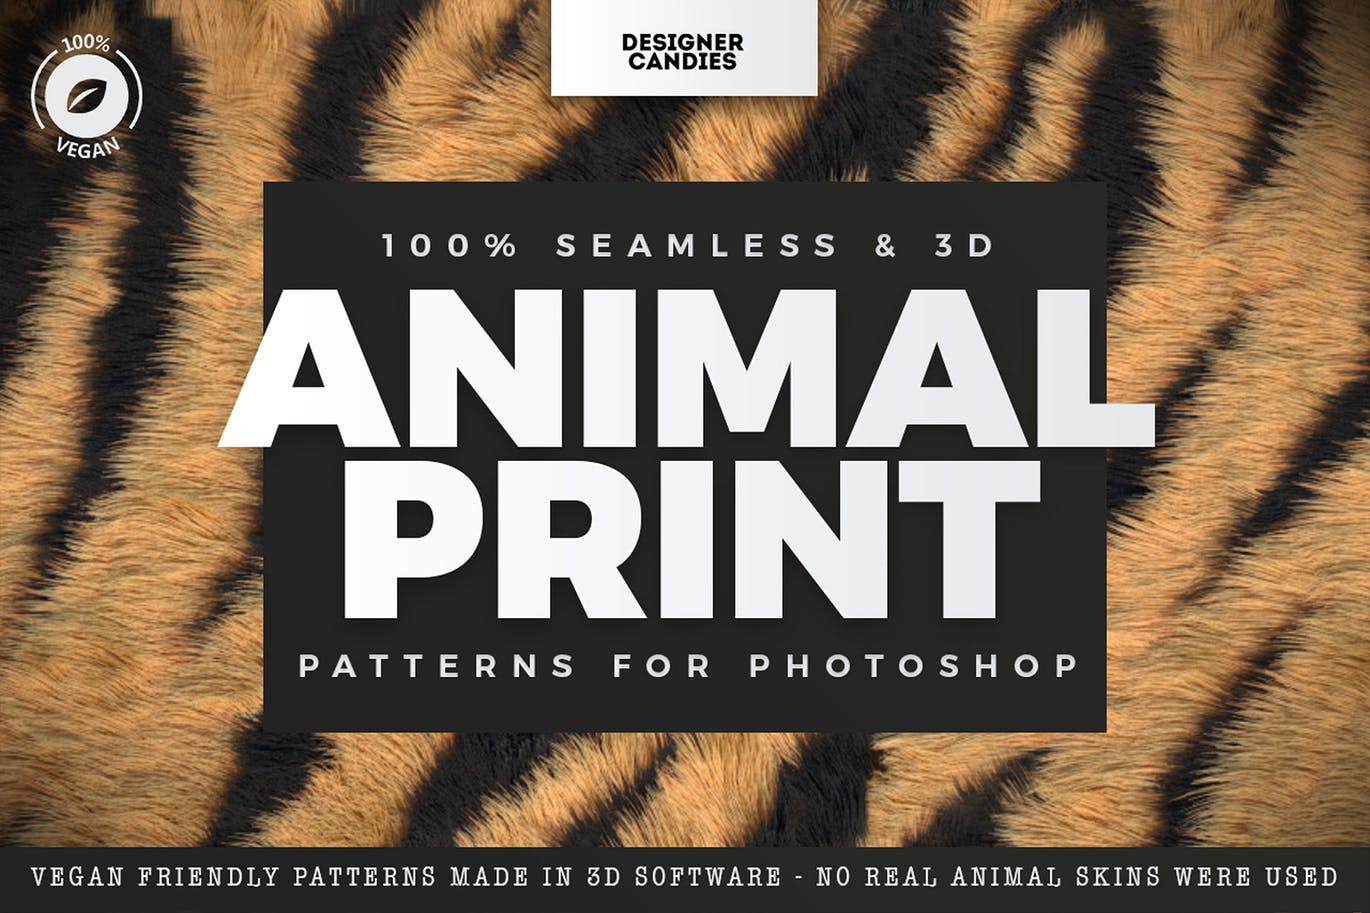 适用于Photoshop的动物印花图案 Animal Print Patterns for Photoshop 图片素材 第1张